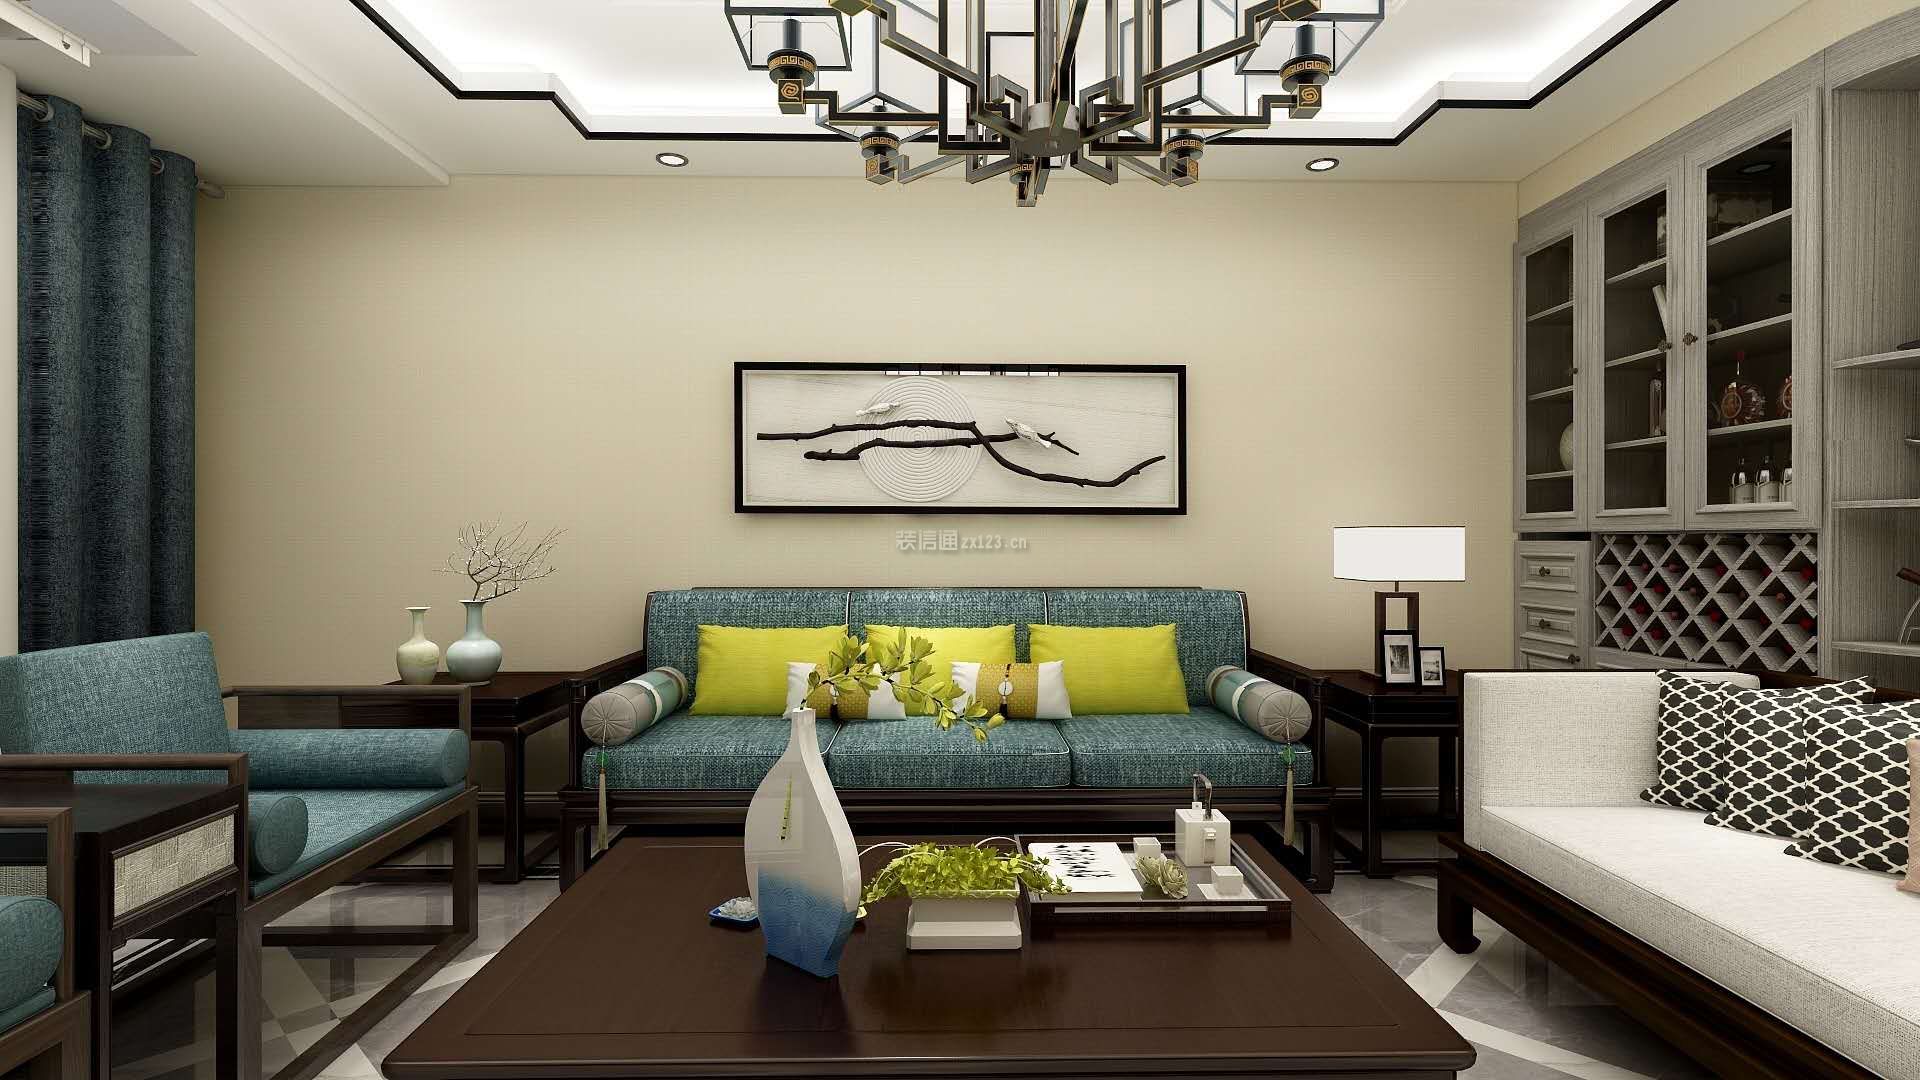 新中式风格客厅沙发背景墙装修效果图